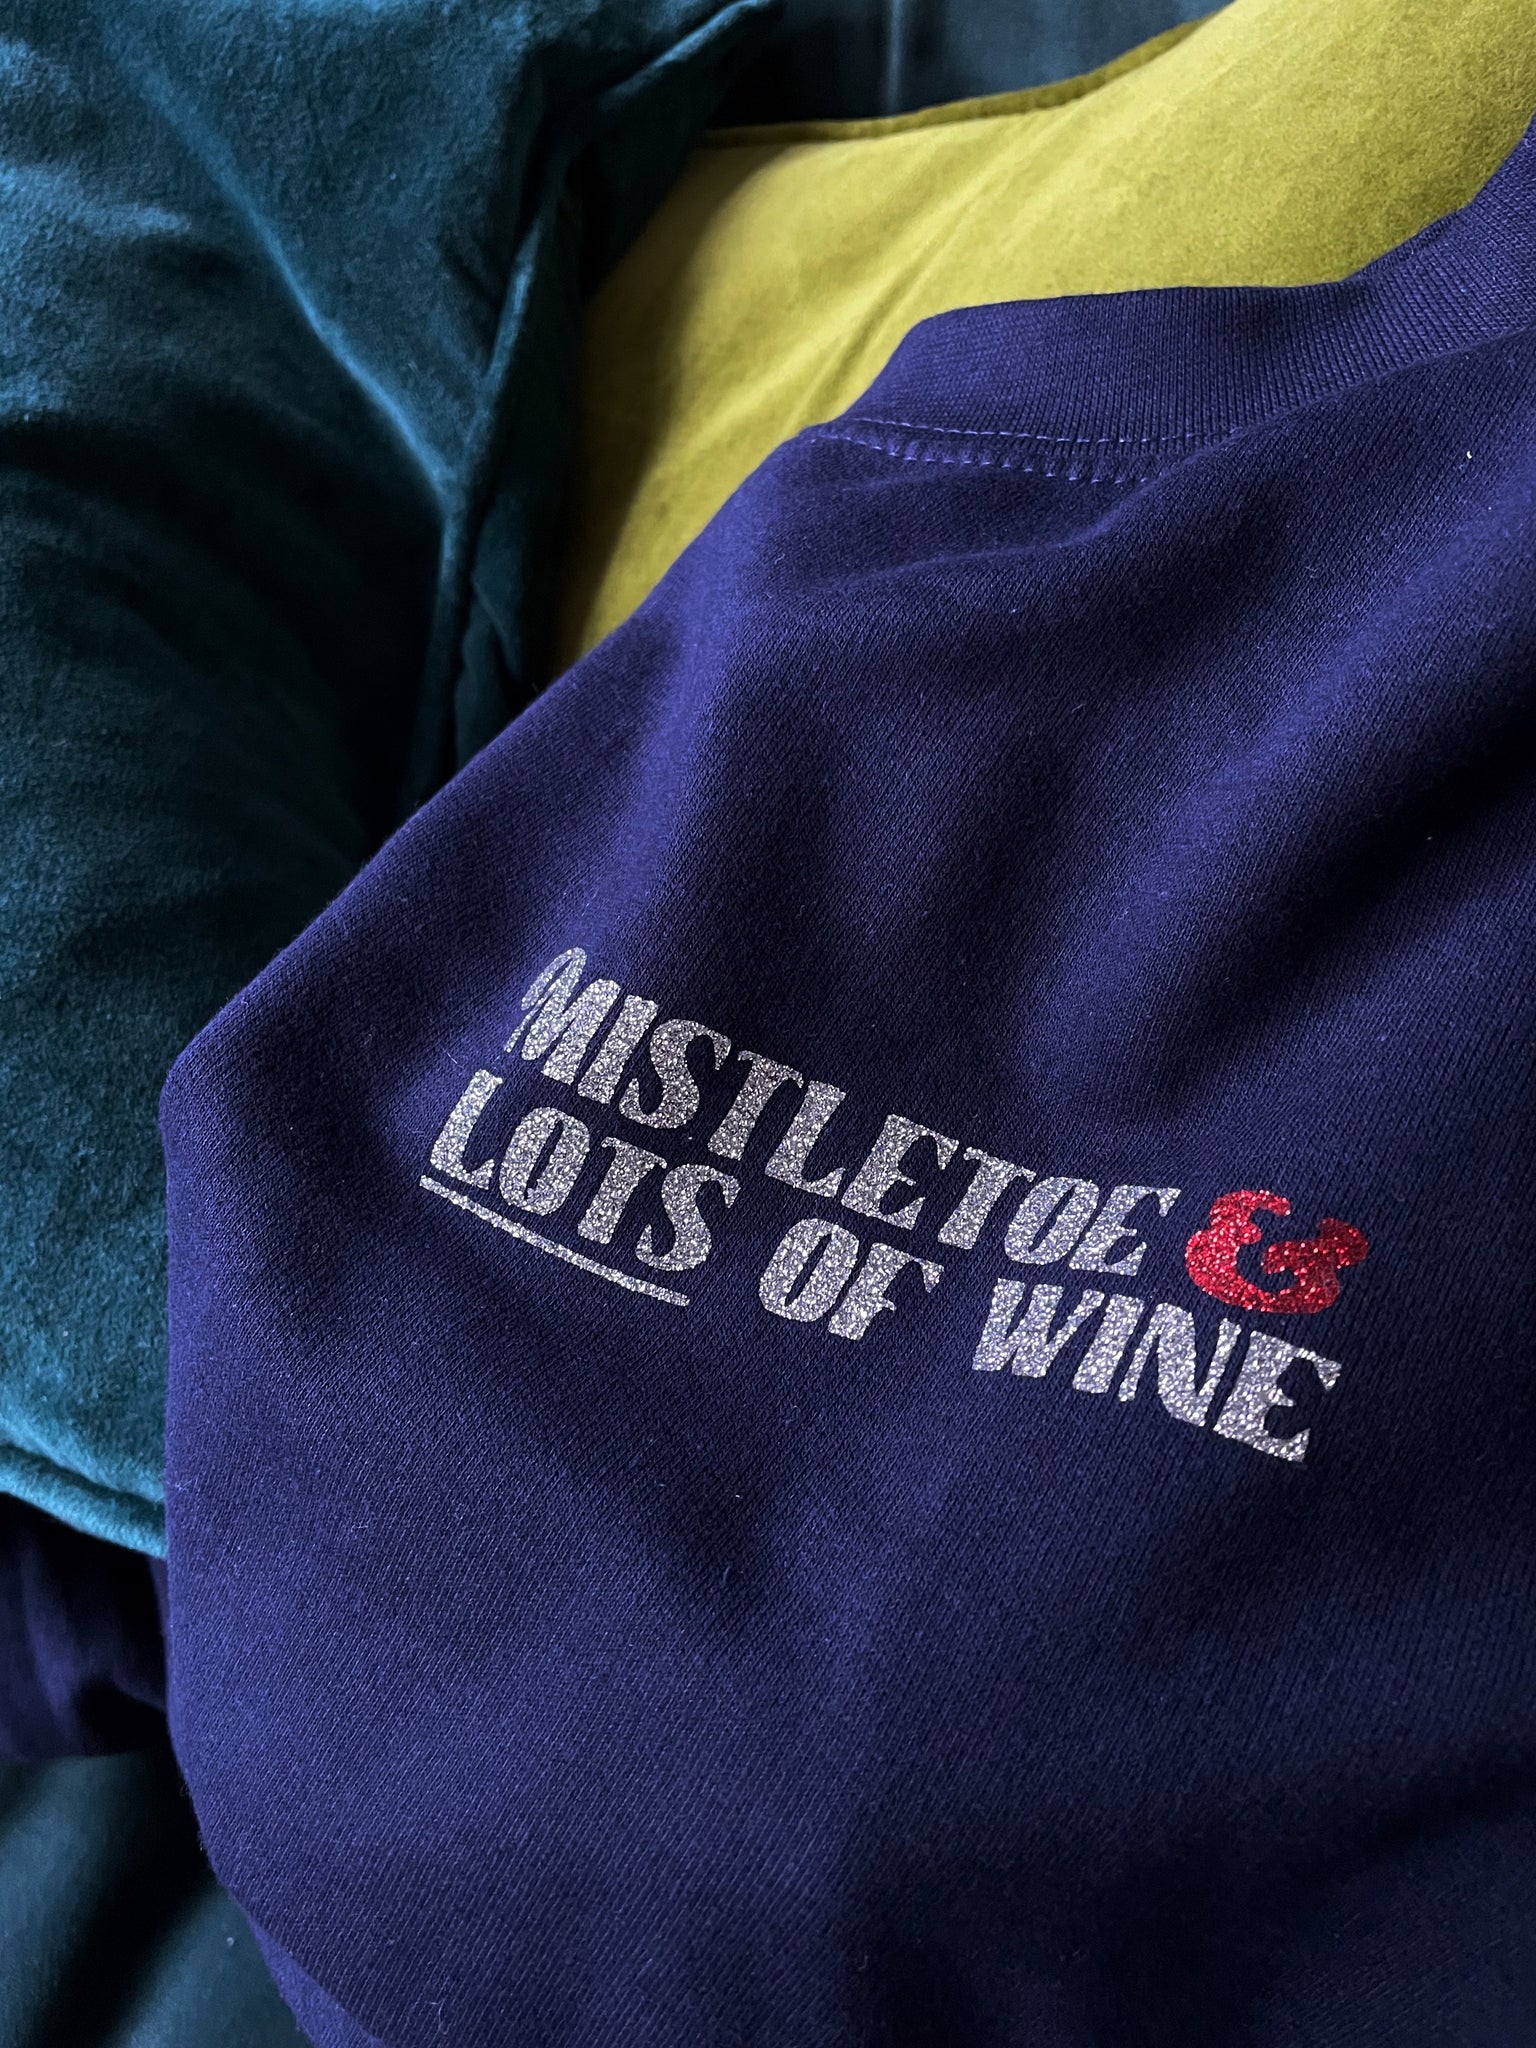 Mistletoe & Lots of Wine - Unisex Fit Sweater